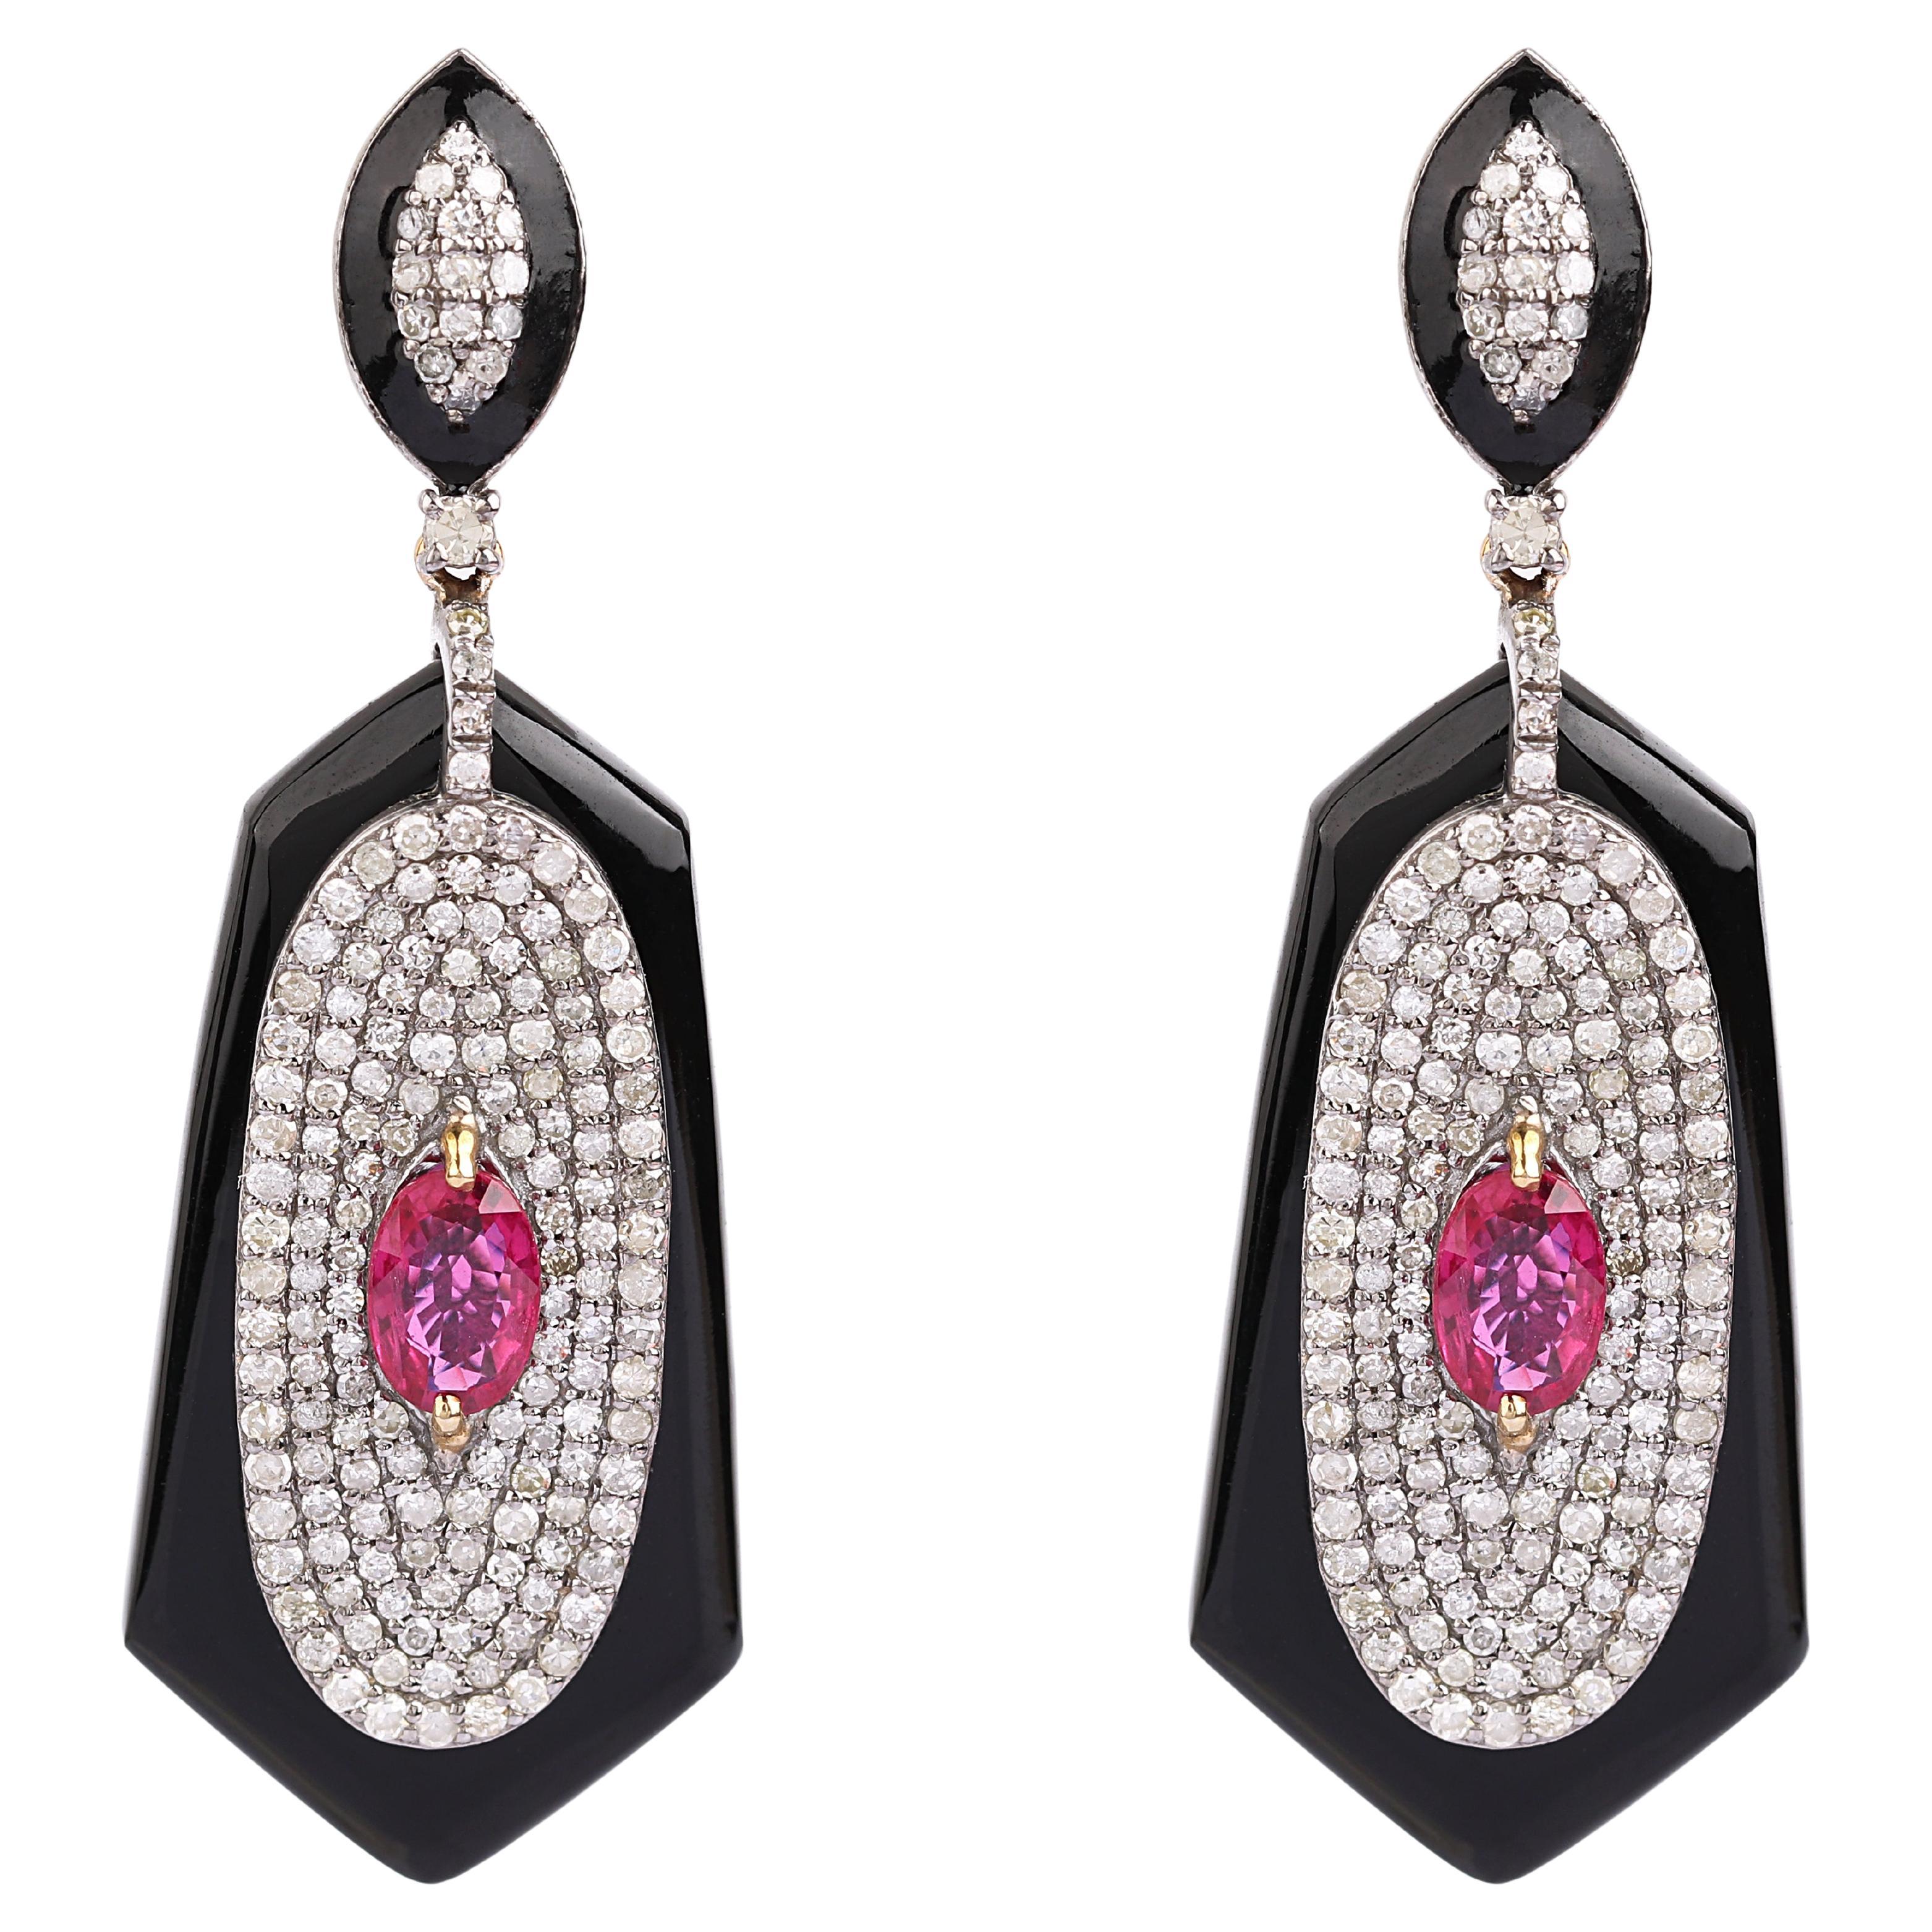 Pendants d'oreilles de 16,31 carats en diamant, rubis et onyx noir de style contemporain